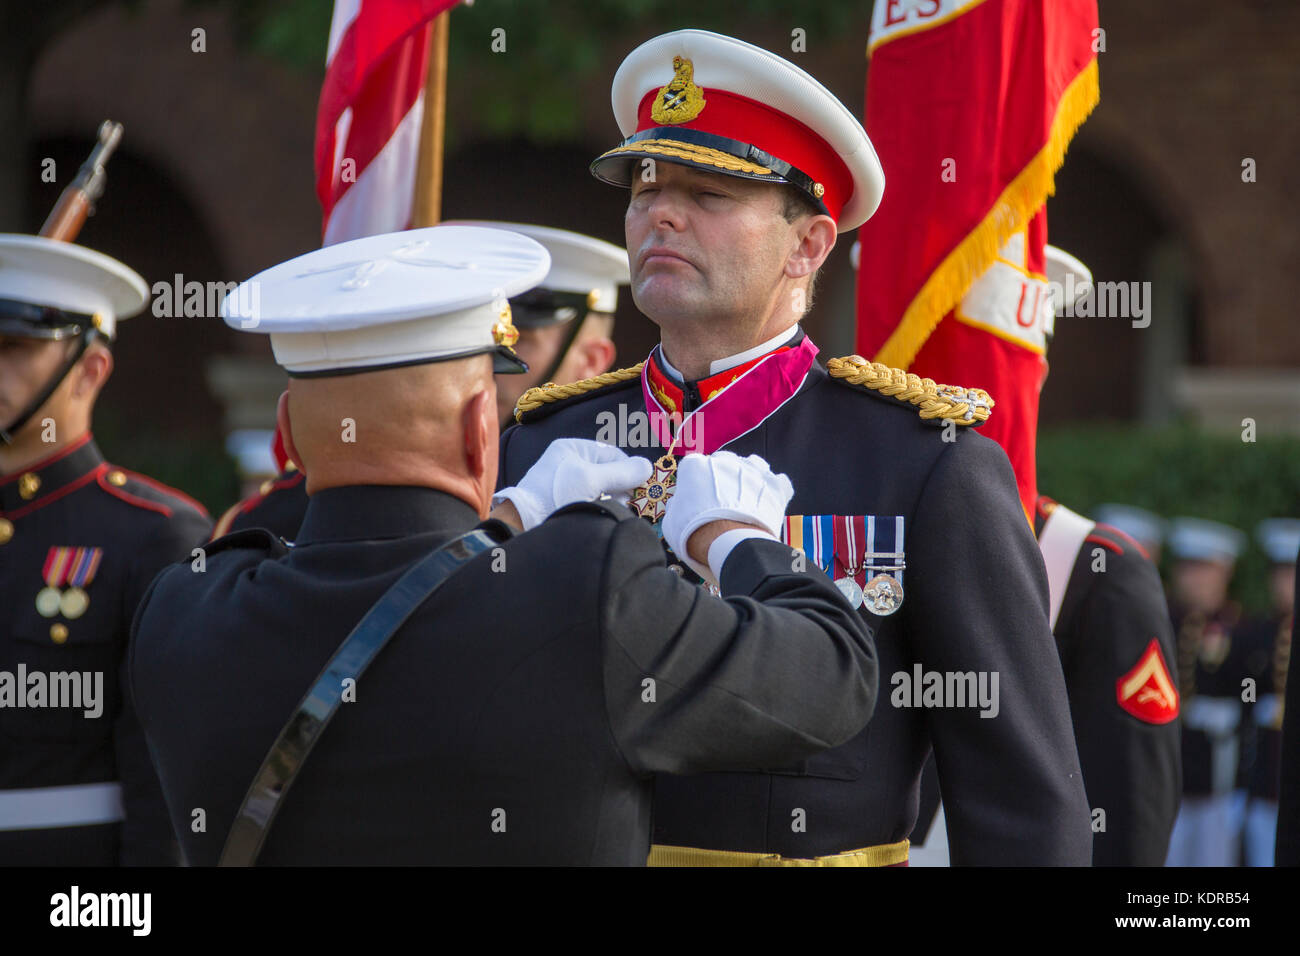 Us marine corps comandante Robert neller awards British Royal Marine Corps comandante generale Robert magowan la legione di merito durante una cerimonia onorificenze presso la caserma marini washington ottobre 10, 2017 a Washington, DC. Foto Stock